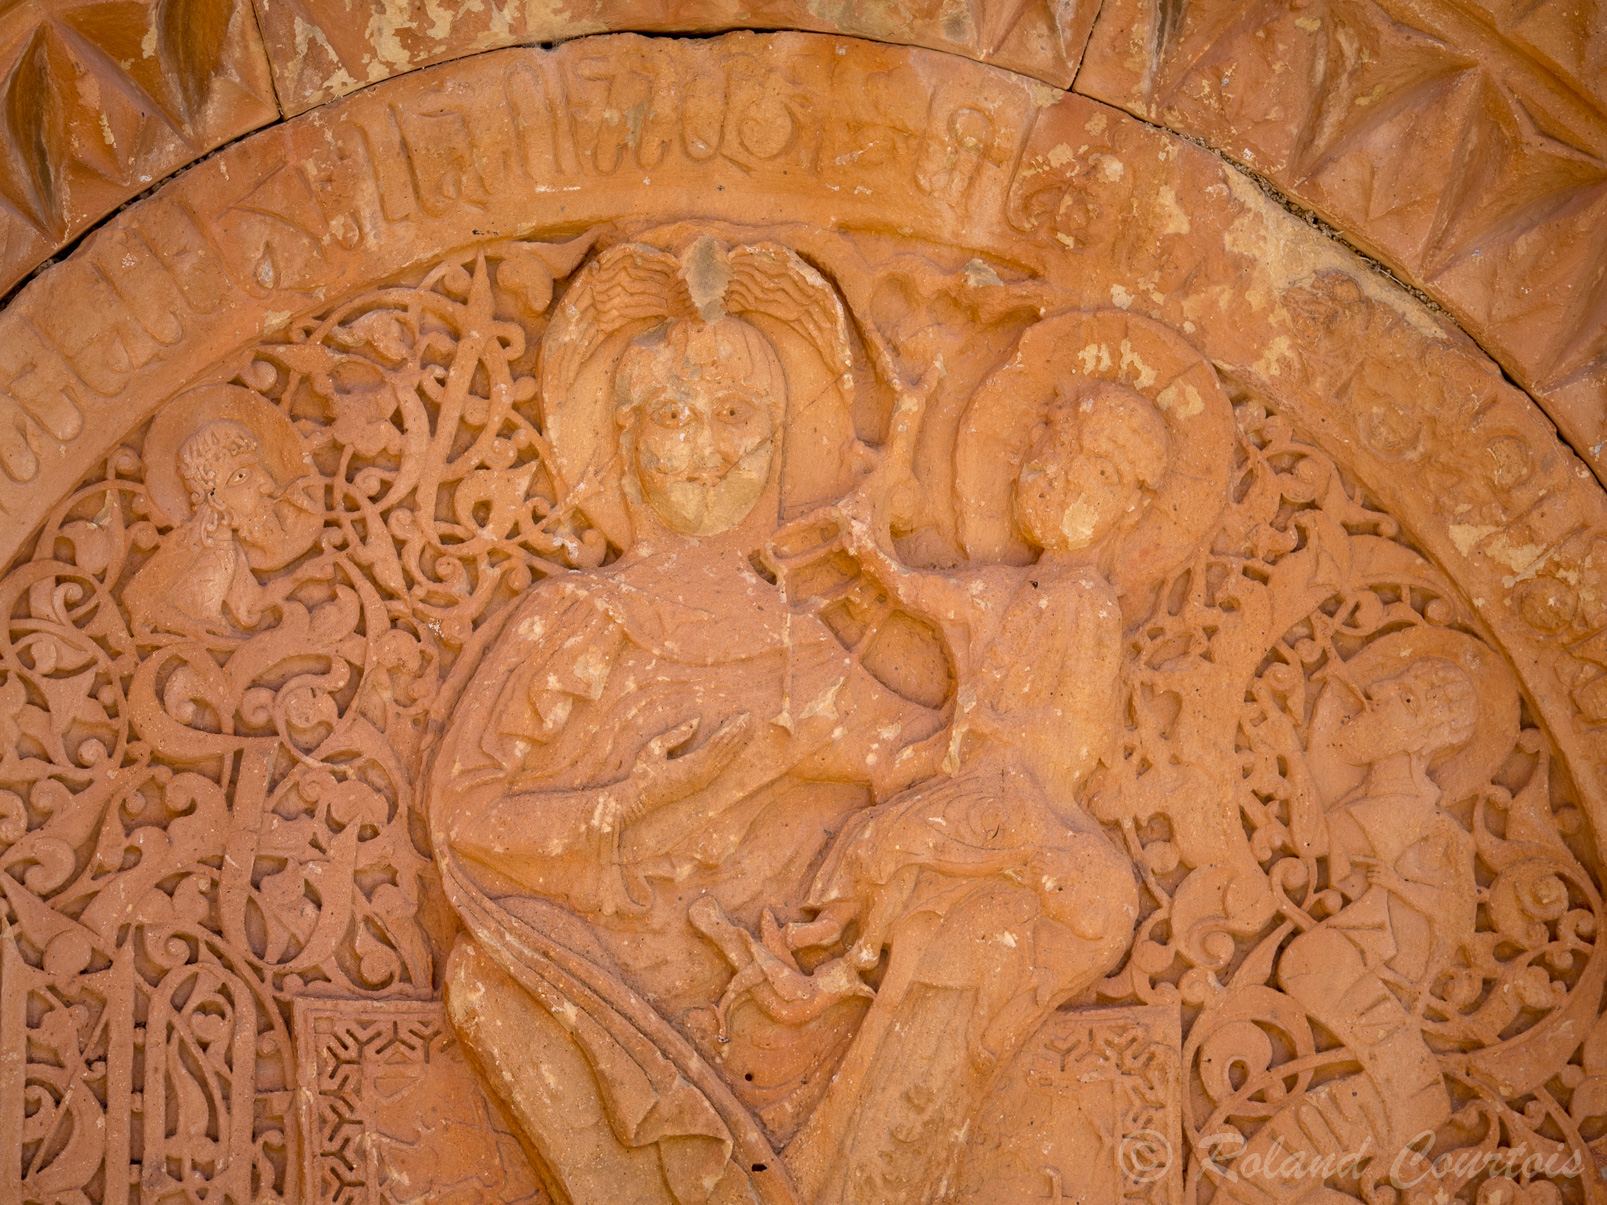 Monastère de Noravank. Eglise de Saint Jean le Précurseur. La Vierge  est surmontée d'une colombe alors qu'un oiseau et un lion se trouve sous l'Enfant.